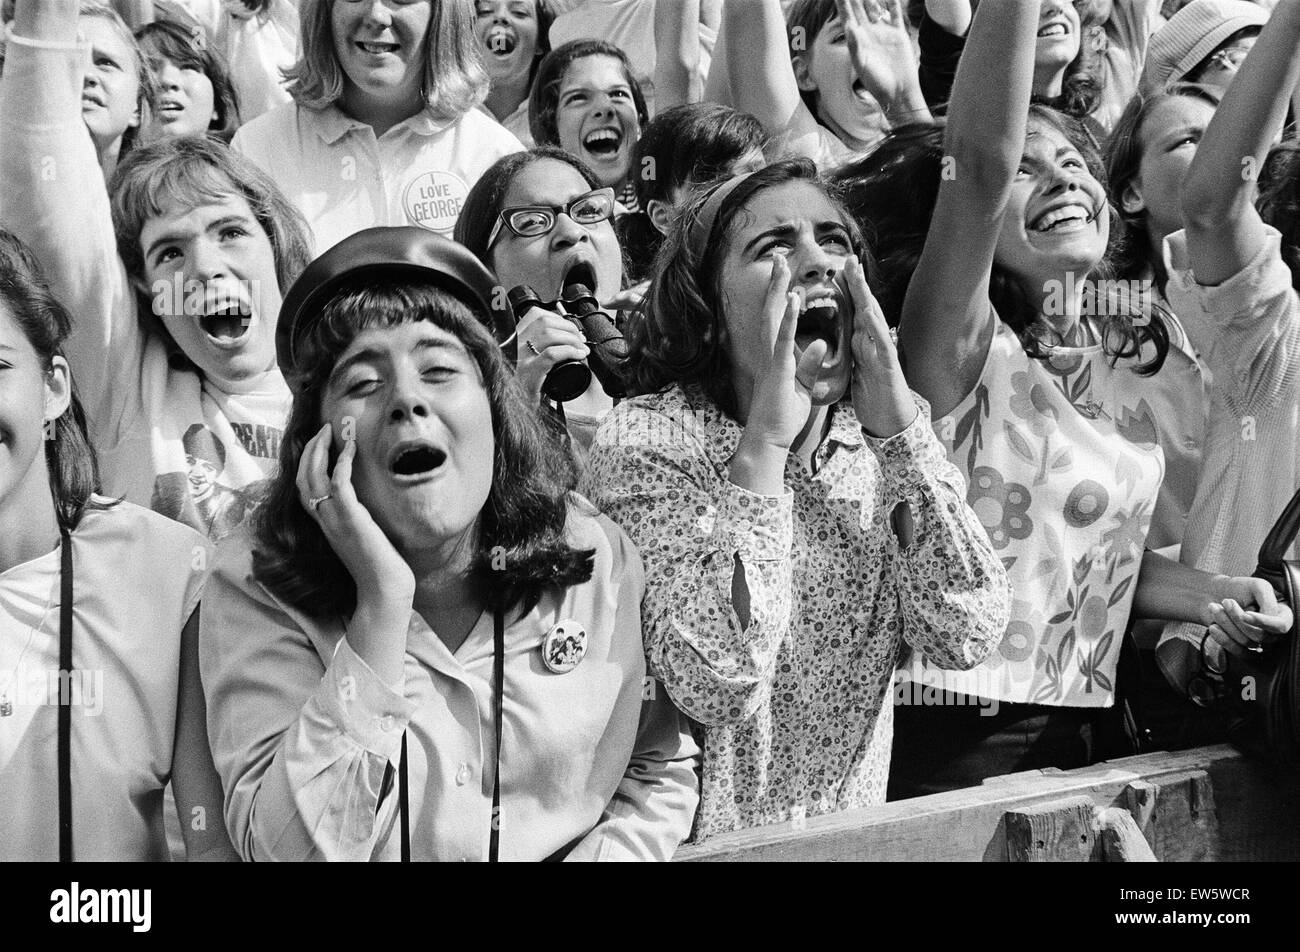 Les Beatles à New York City, sur leur tournée nord-américaine de l'avant de leur concert qui aura lieu à Forest Hills. Cheering fans réunis devant l'hôtel Delmonico à New York, où le groupe est d'un séjour. 28 août 1964. Banque D'Images